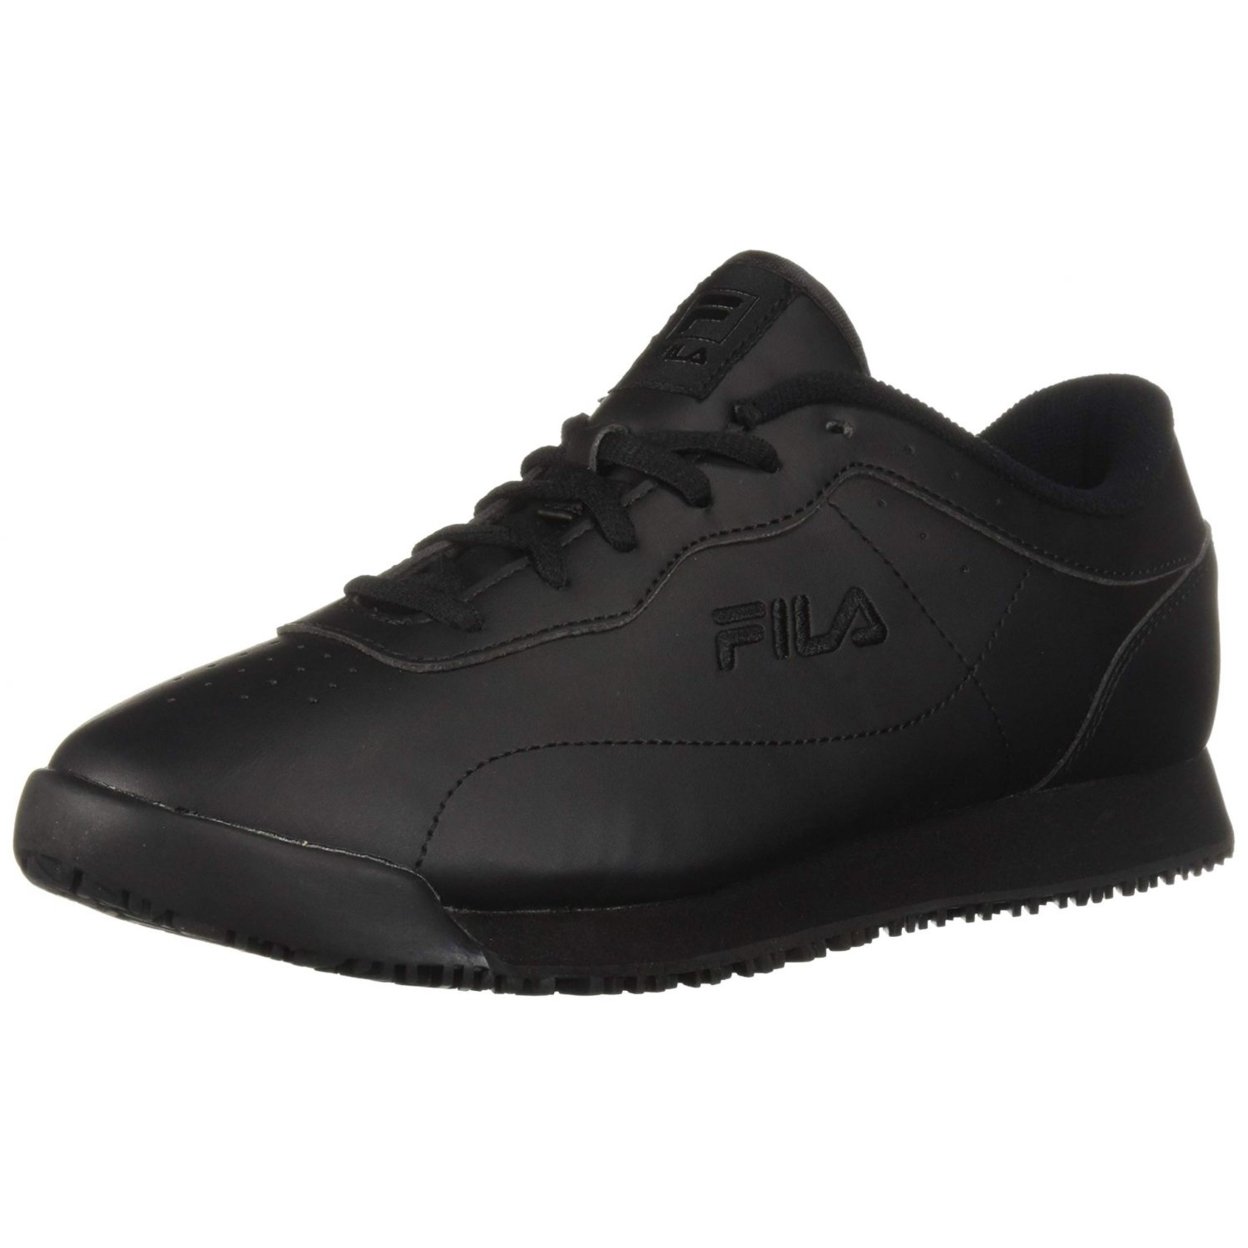 Fila Memory Viable Sr Wide Womens Shoes Size 10, Color: Black 0 BLK/BLK/BLK - Black, 15.0